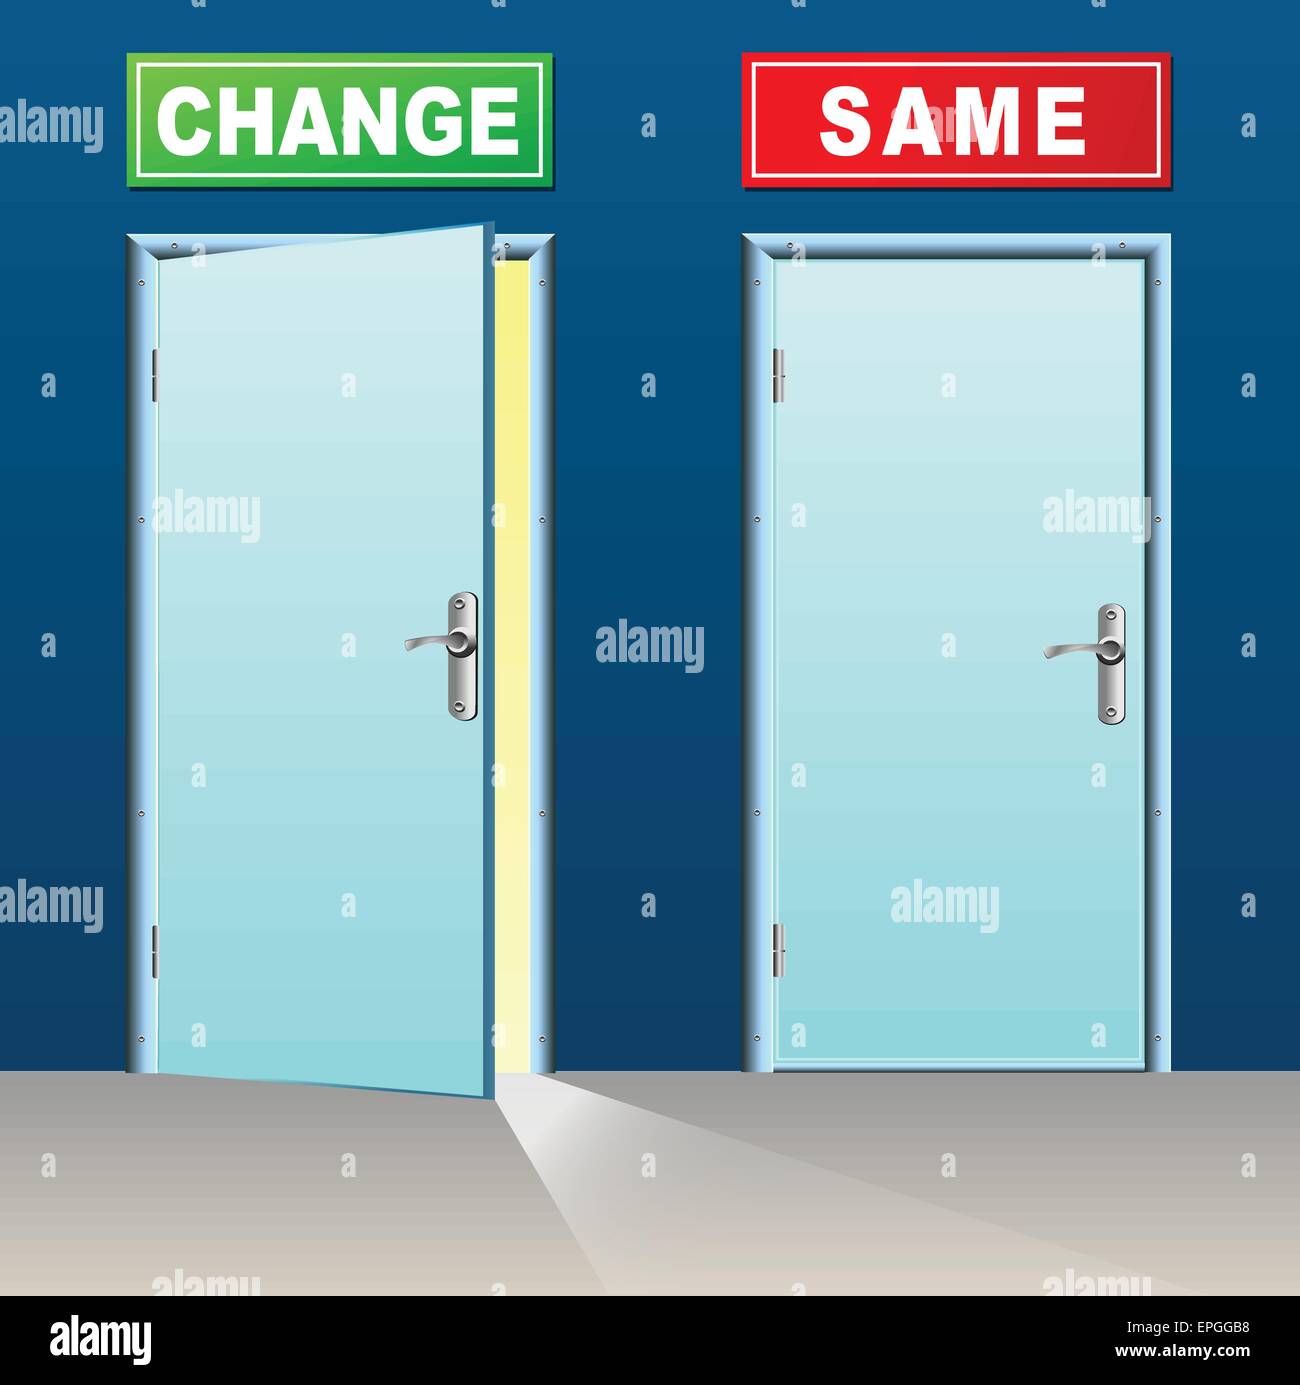 Illustrazione di due porte per il cambiamento e la stessa Illustrazione Vettoriale